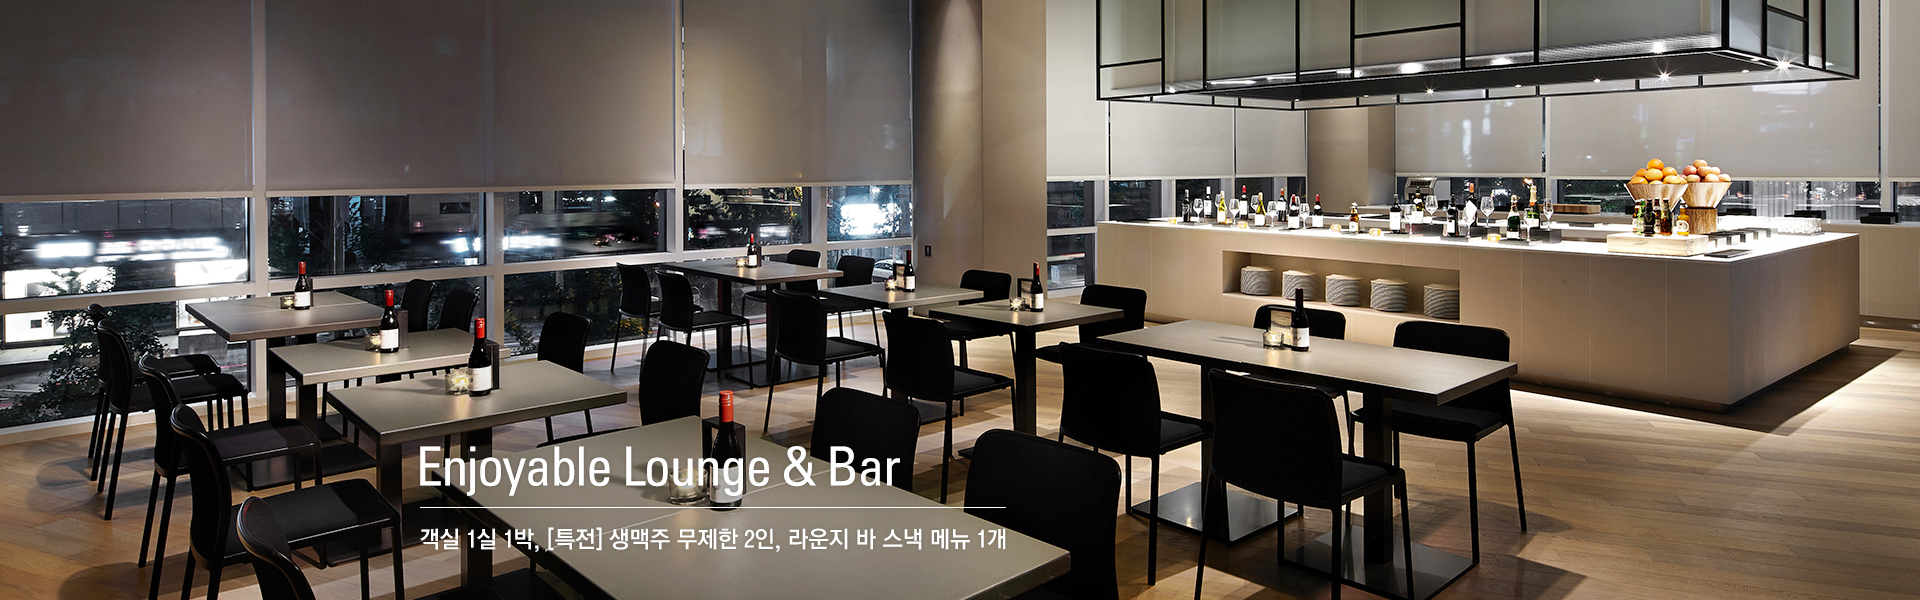 Enjoyable Lounge & Bar